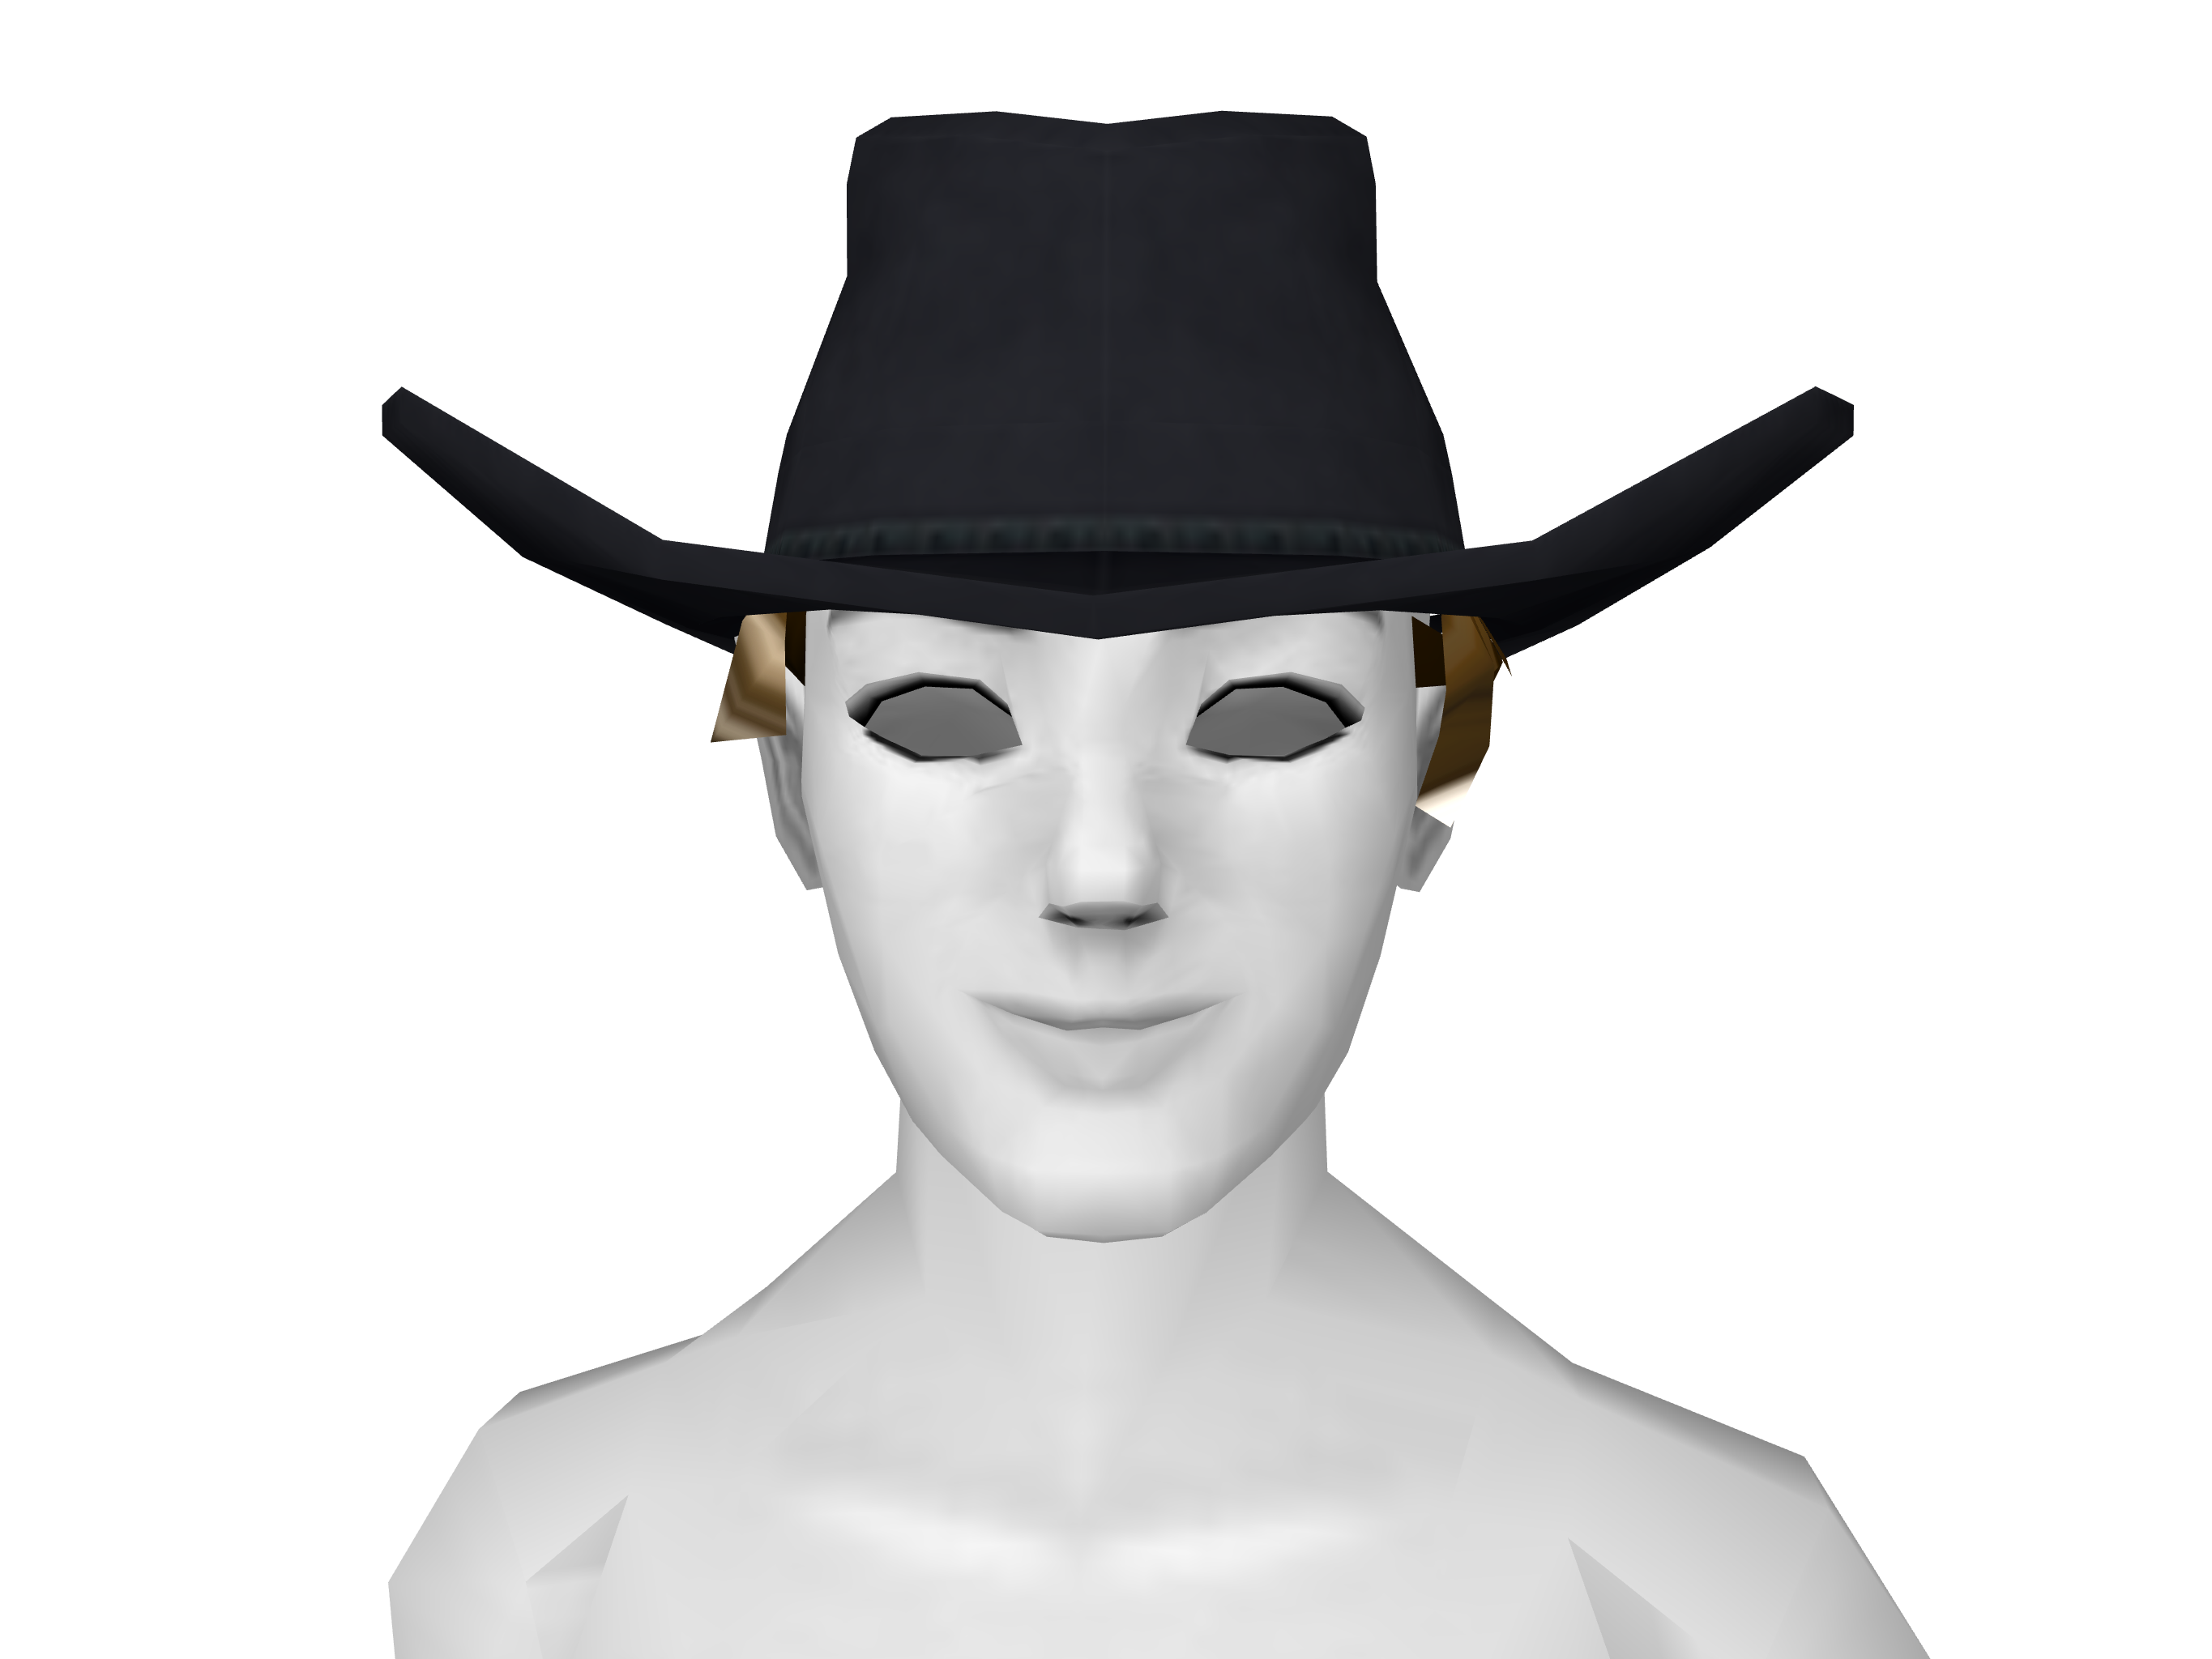 bad cowboy costume